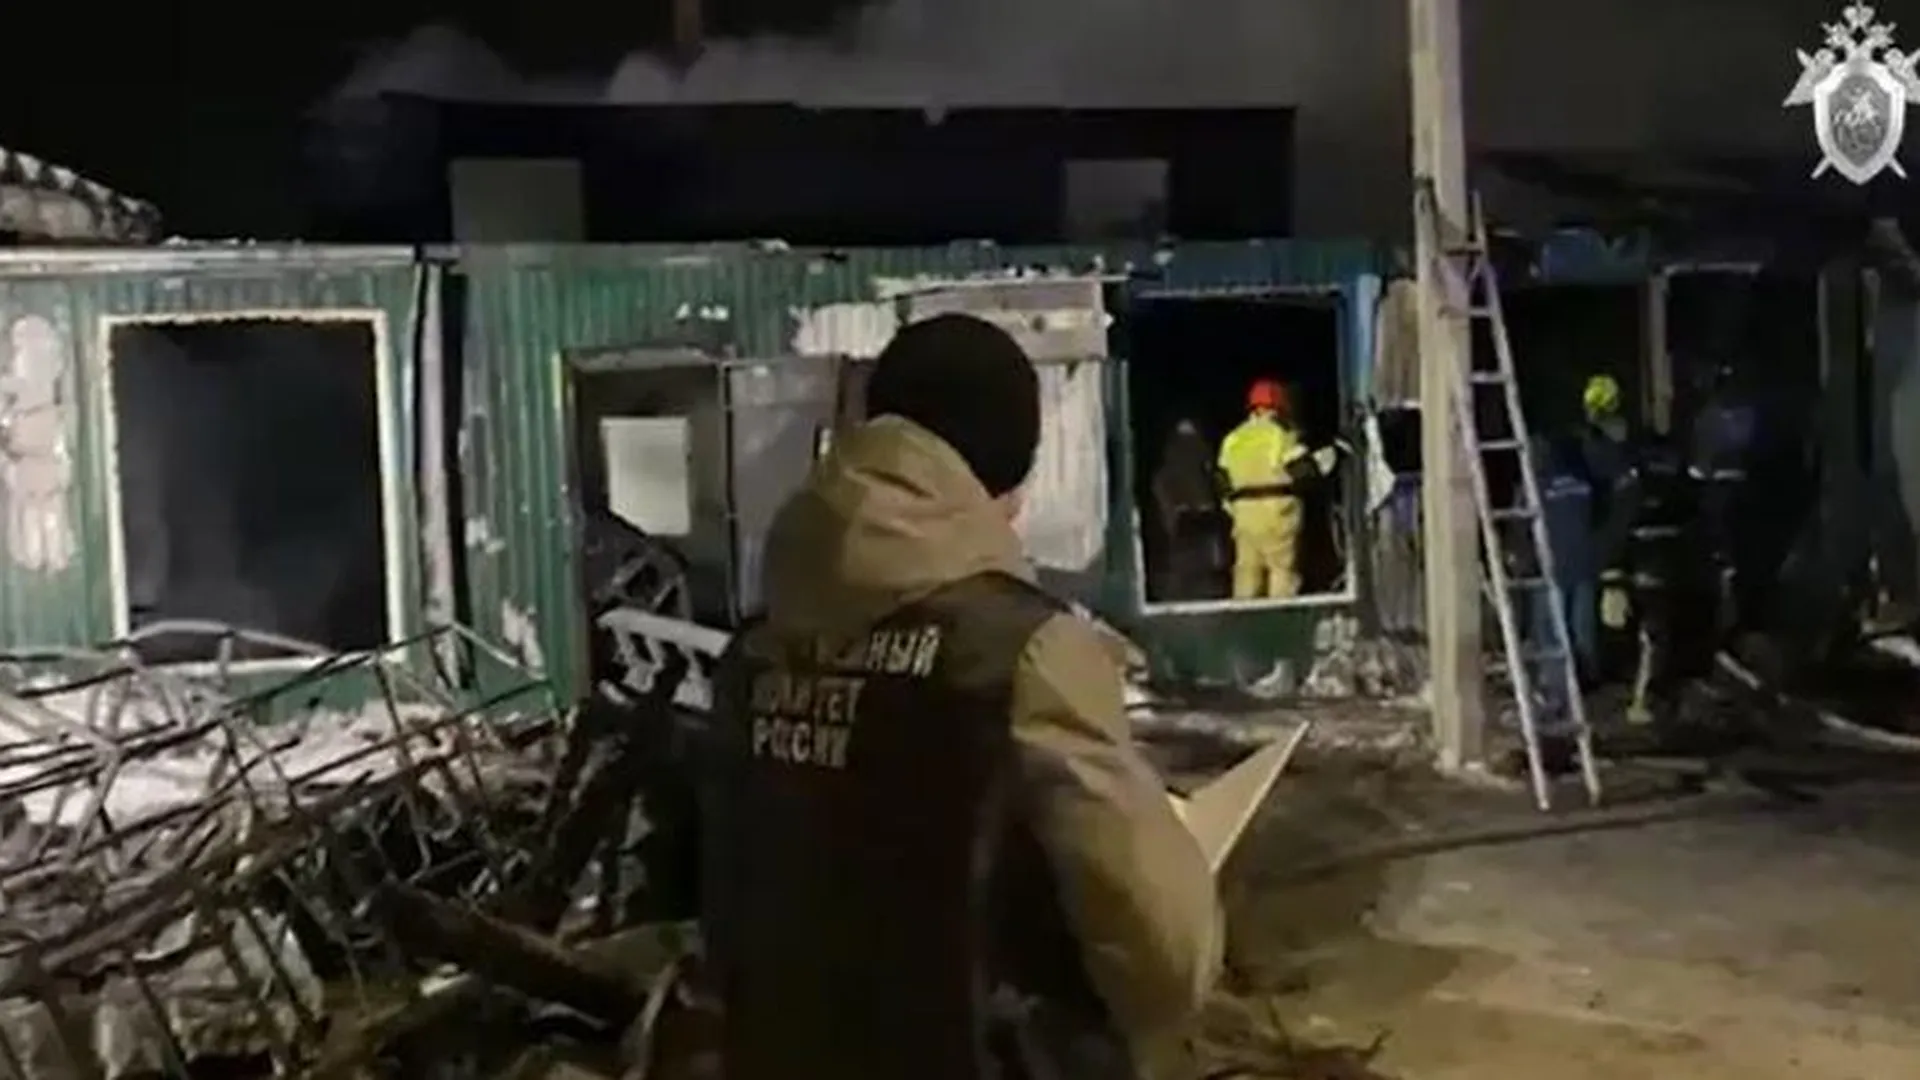 Организатору сгоревшего приюта в Кемерове предъявили обвинение